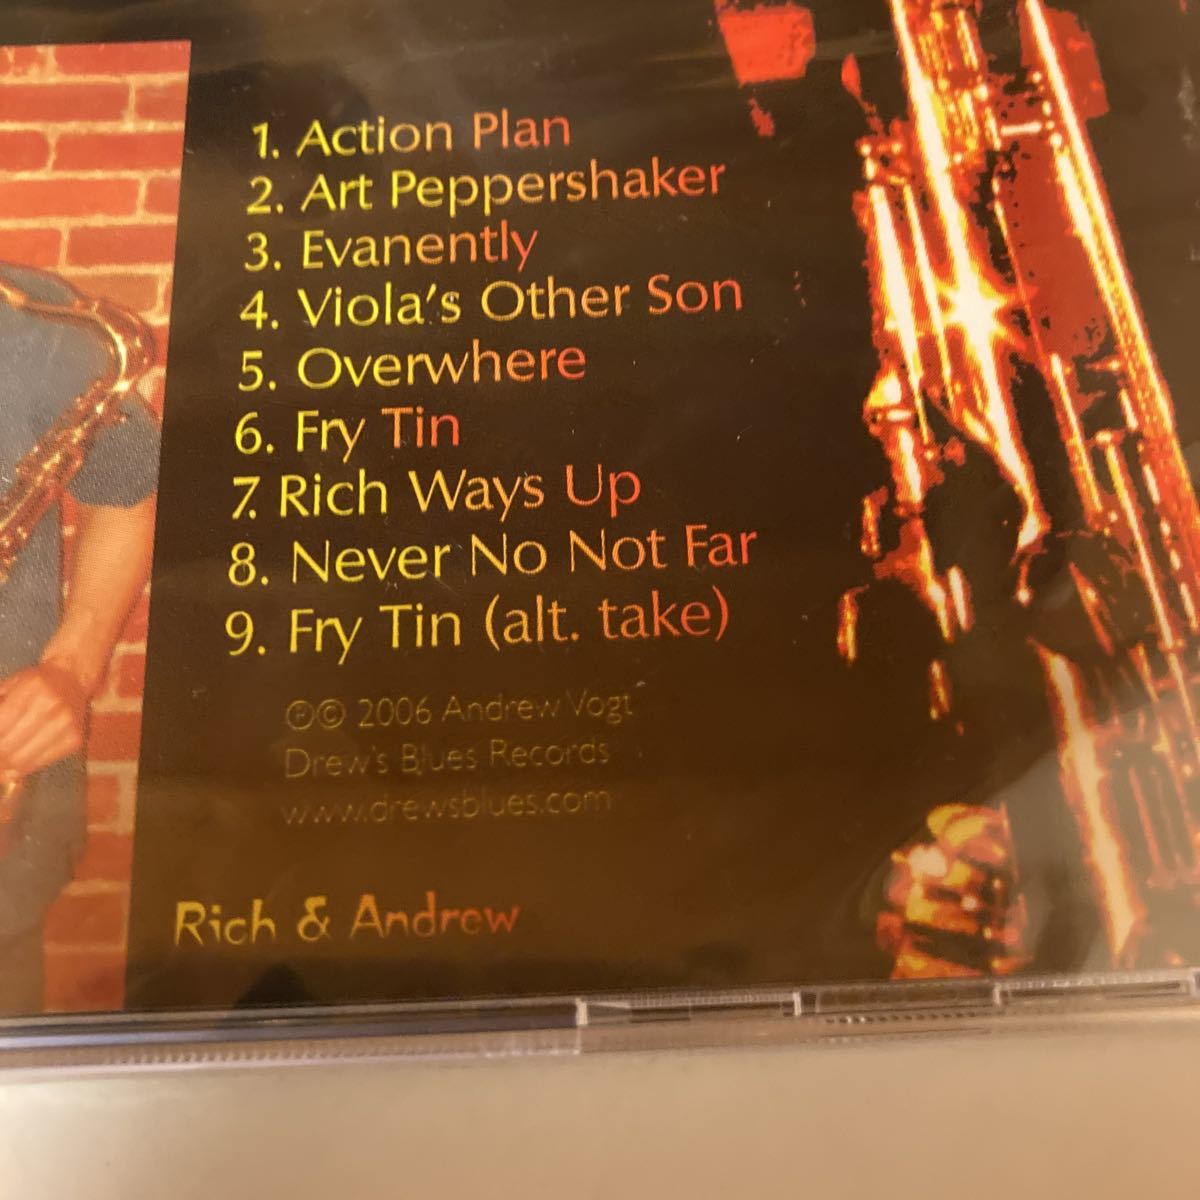 新品未使用品 Andrew Vogt / Action Plan JAZZ ジャズ Drews Blues Records Rich & Andrew _画像3